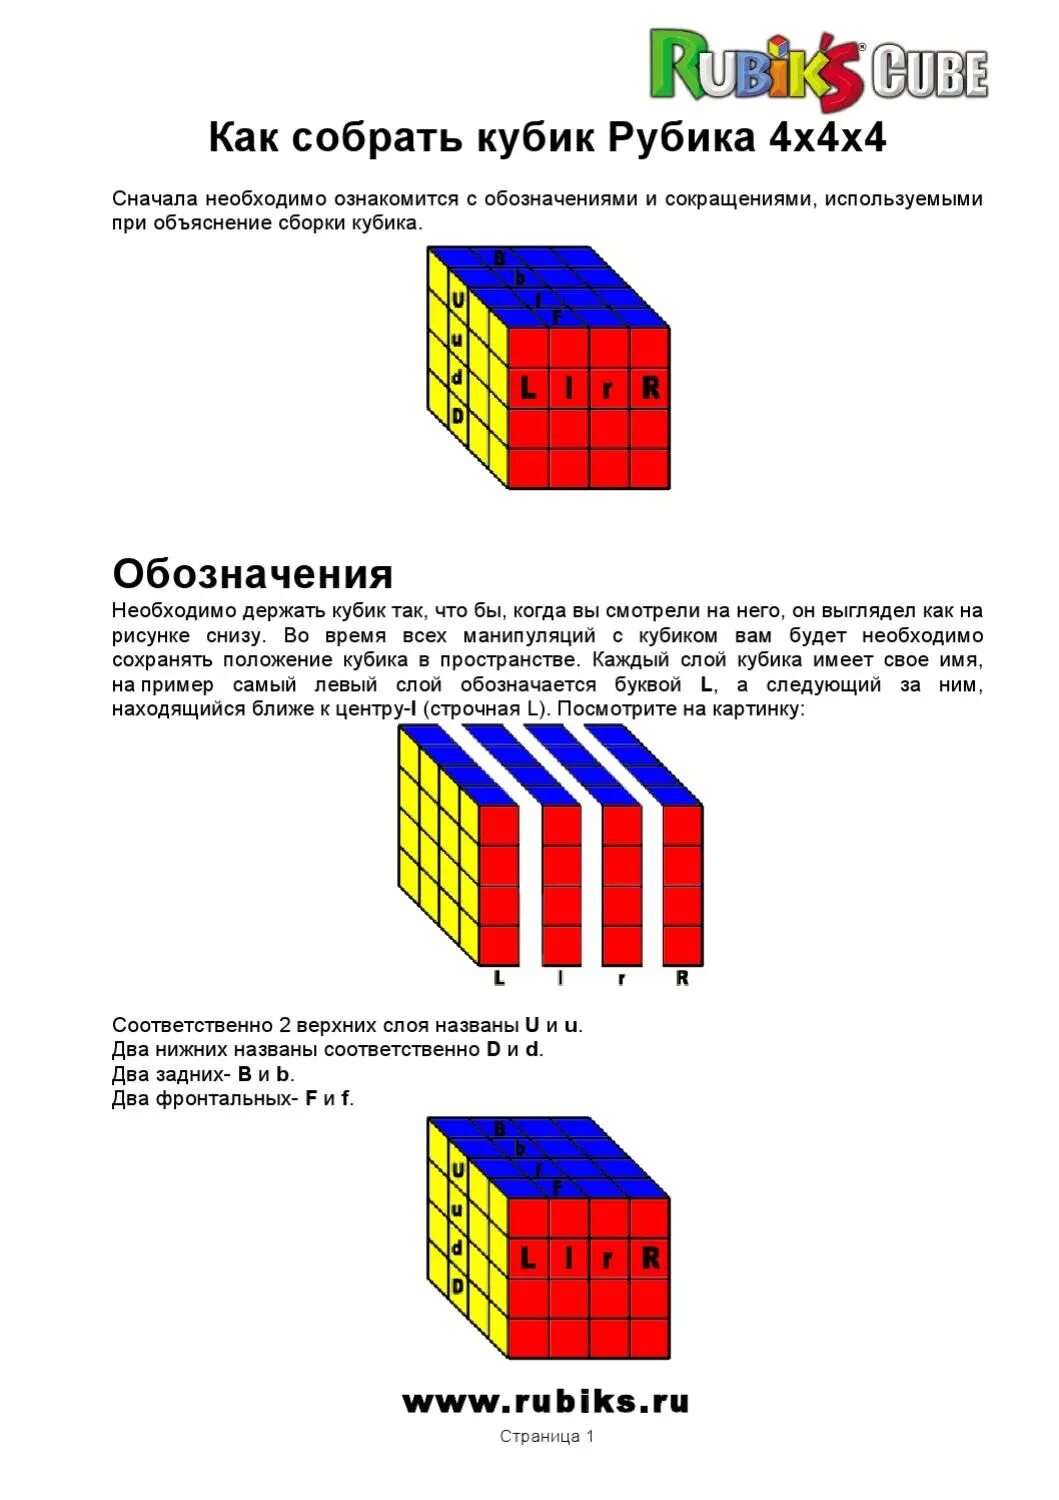 Как собрать рубика 4х4. Схема сбора кубика Рубика 4х4. 4х4 кубик рубик схема сборки. Формулы сбора кубика 4 на 4. Схема сборки кубика 5x5.